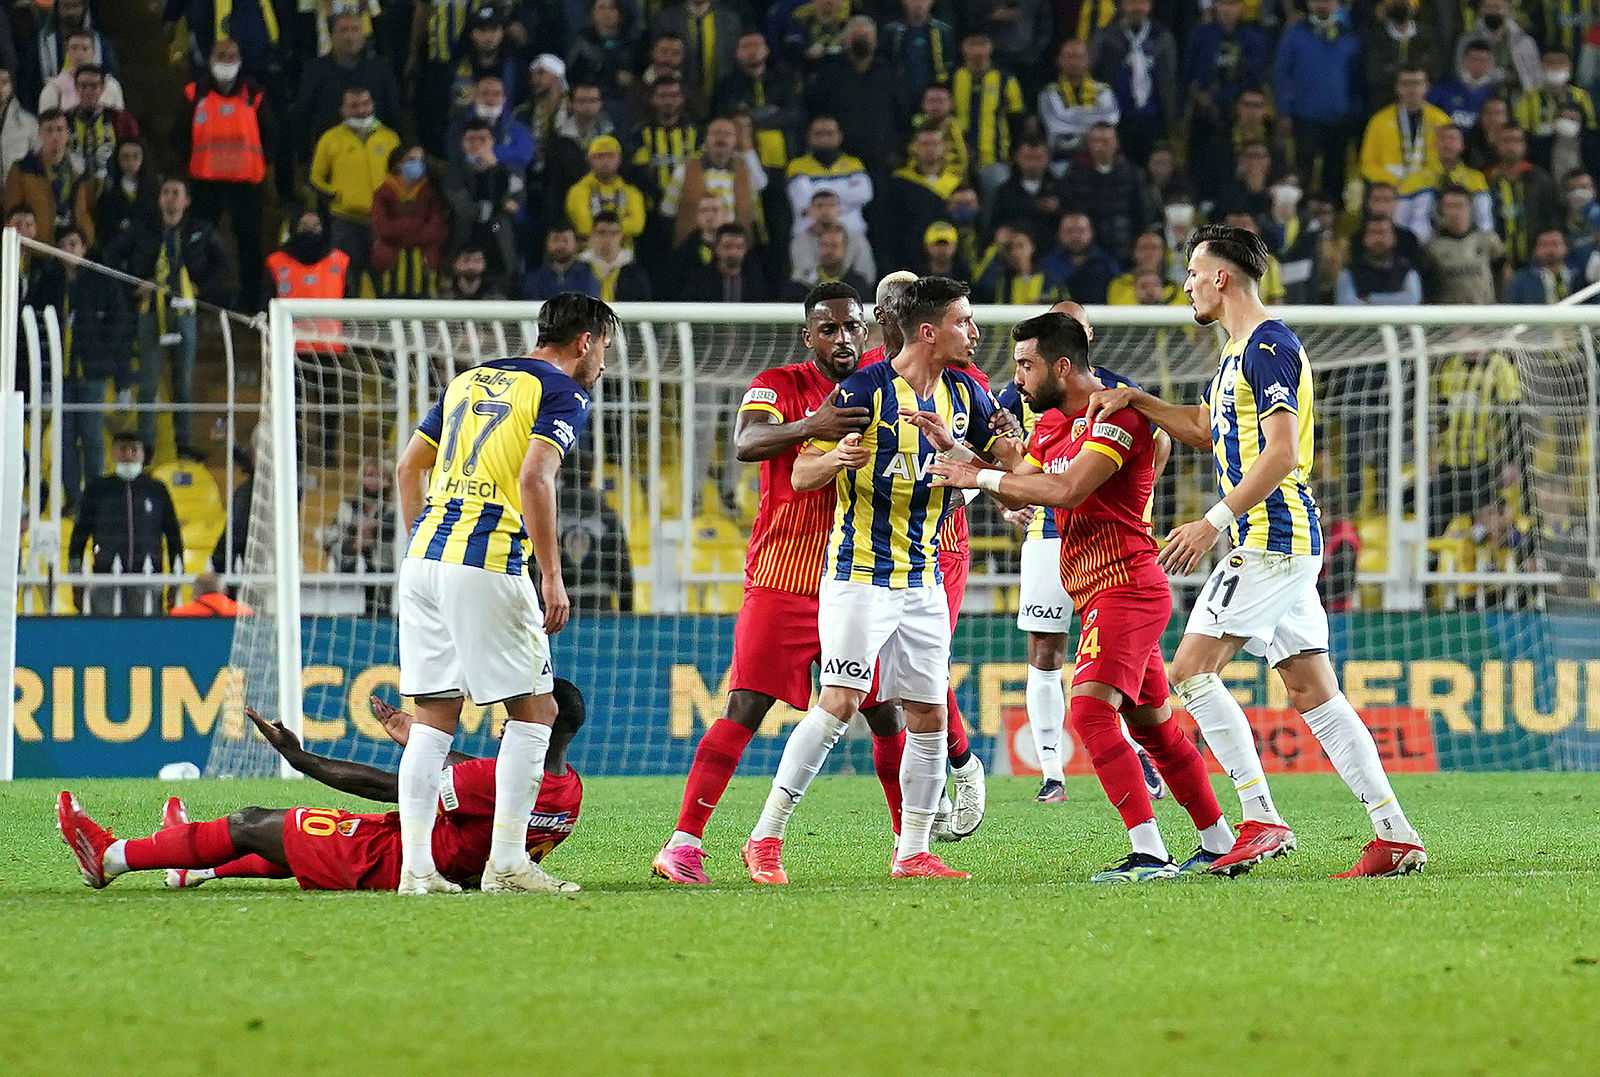 SPOR HABERLERİ: Ahmet Çakar’dan flaş Fenerbahçe ve Galatasaray yorumu! Çifte standart diz boyu